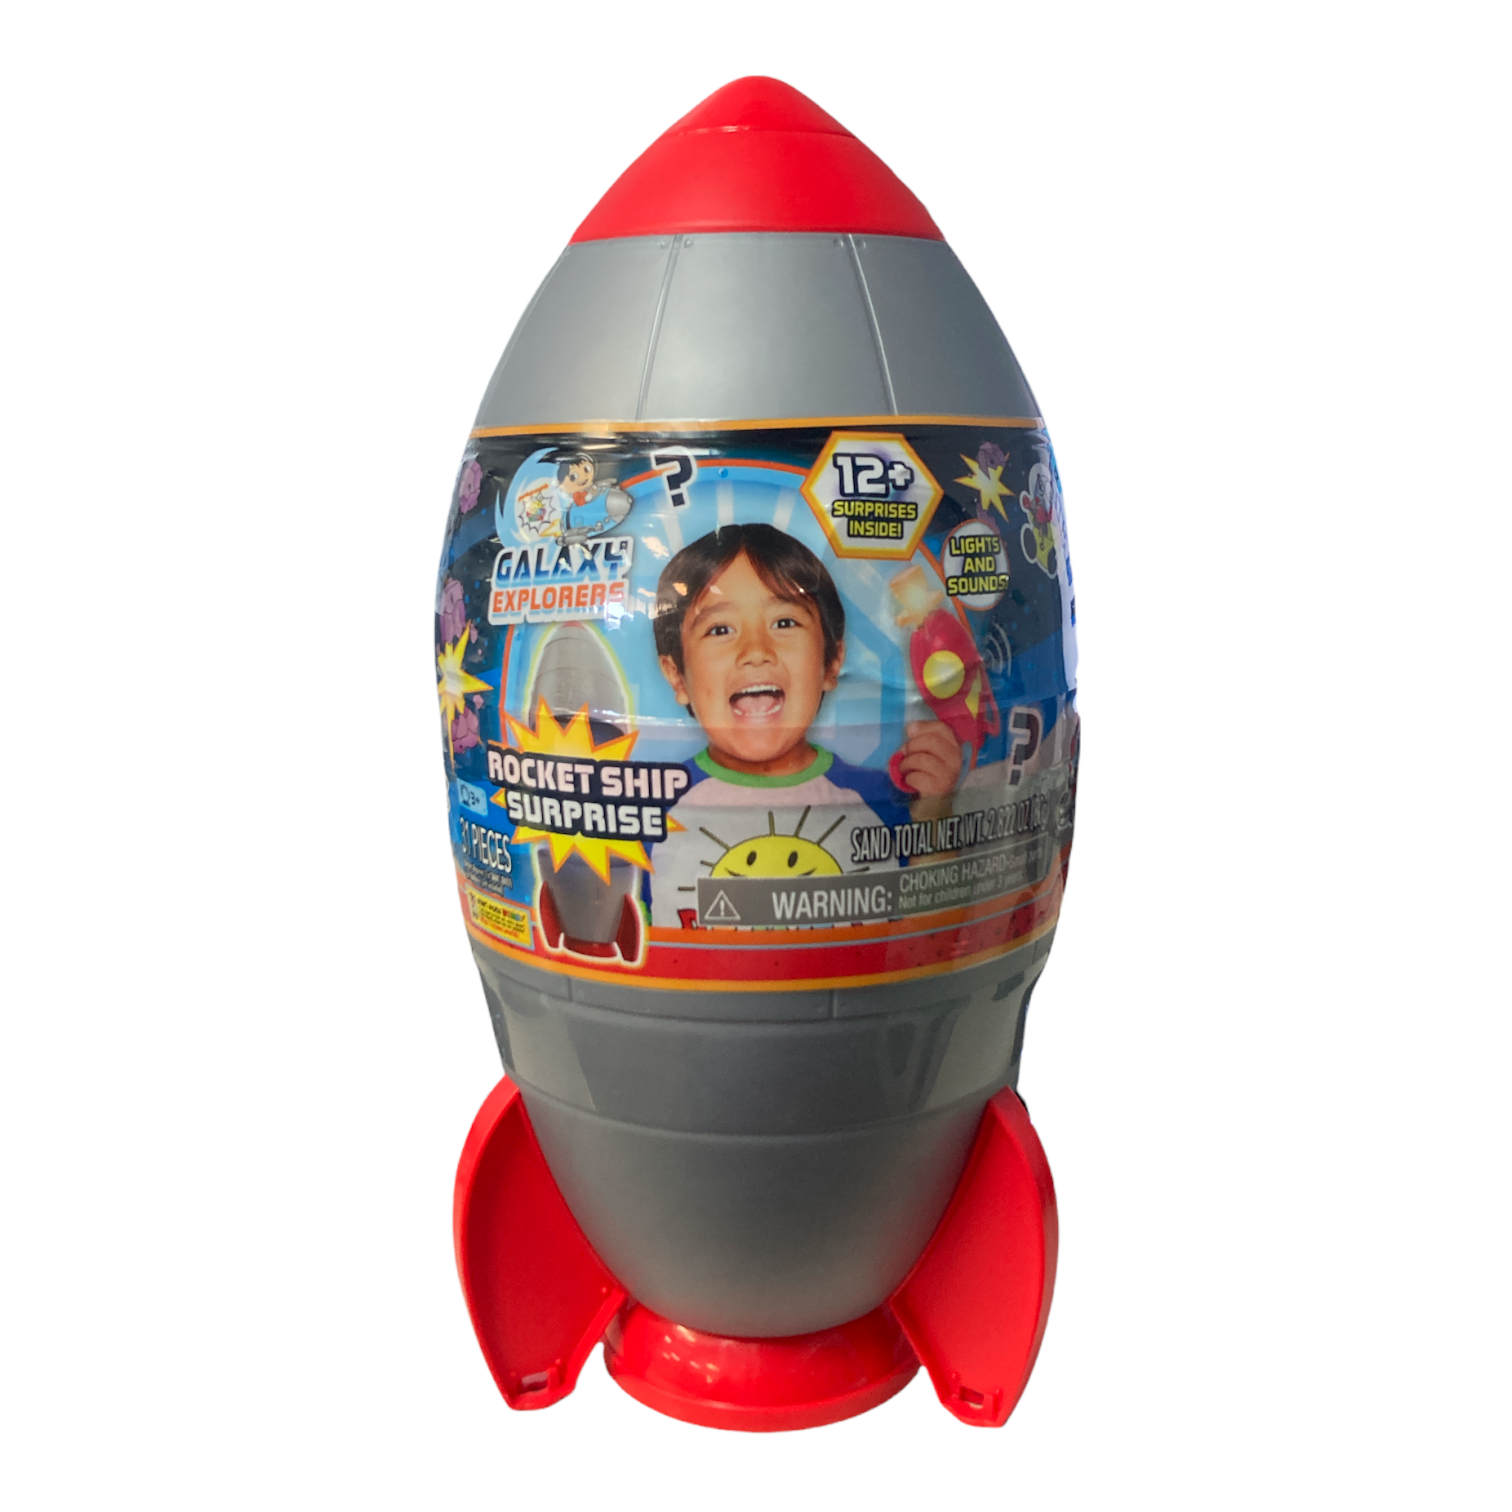 Ryan's World Galaxy Explorers Rocketship 12+ Surprises Playset 31 Pieces -  